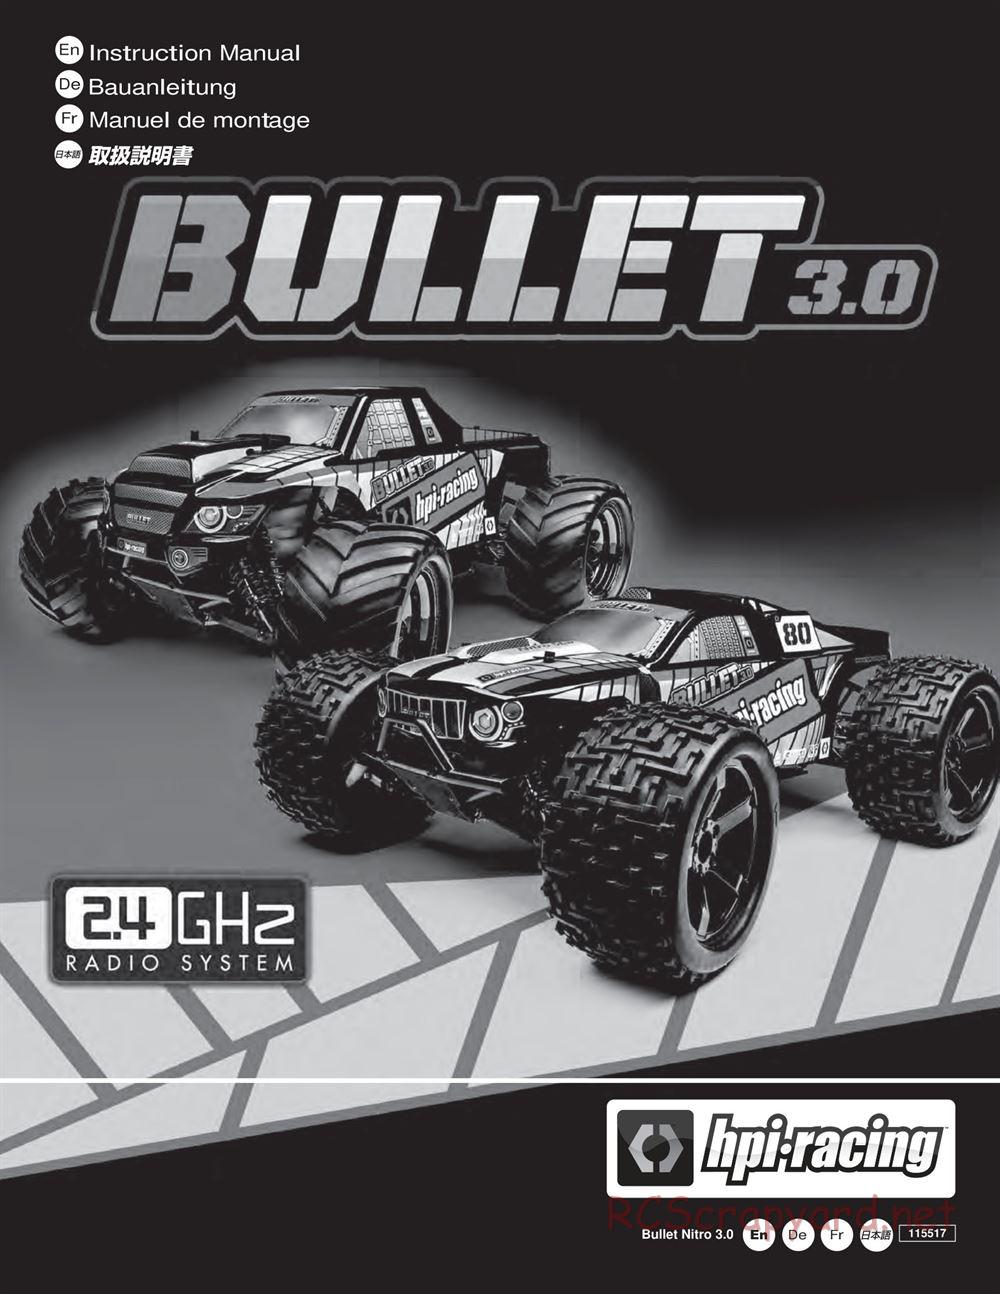 HPI - Bullet MT 3.0 - Manual - Page 1